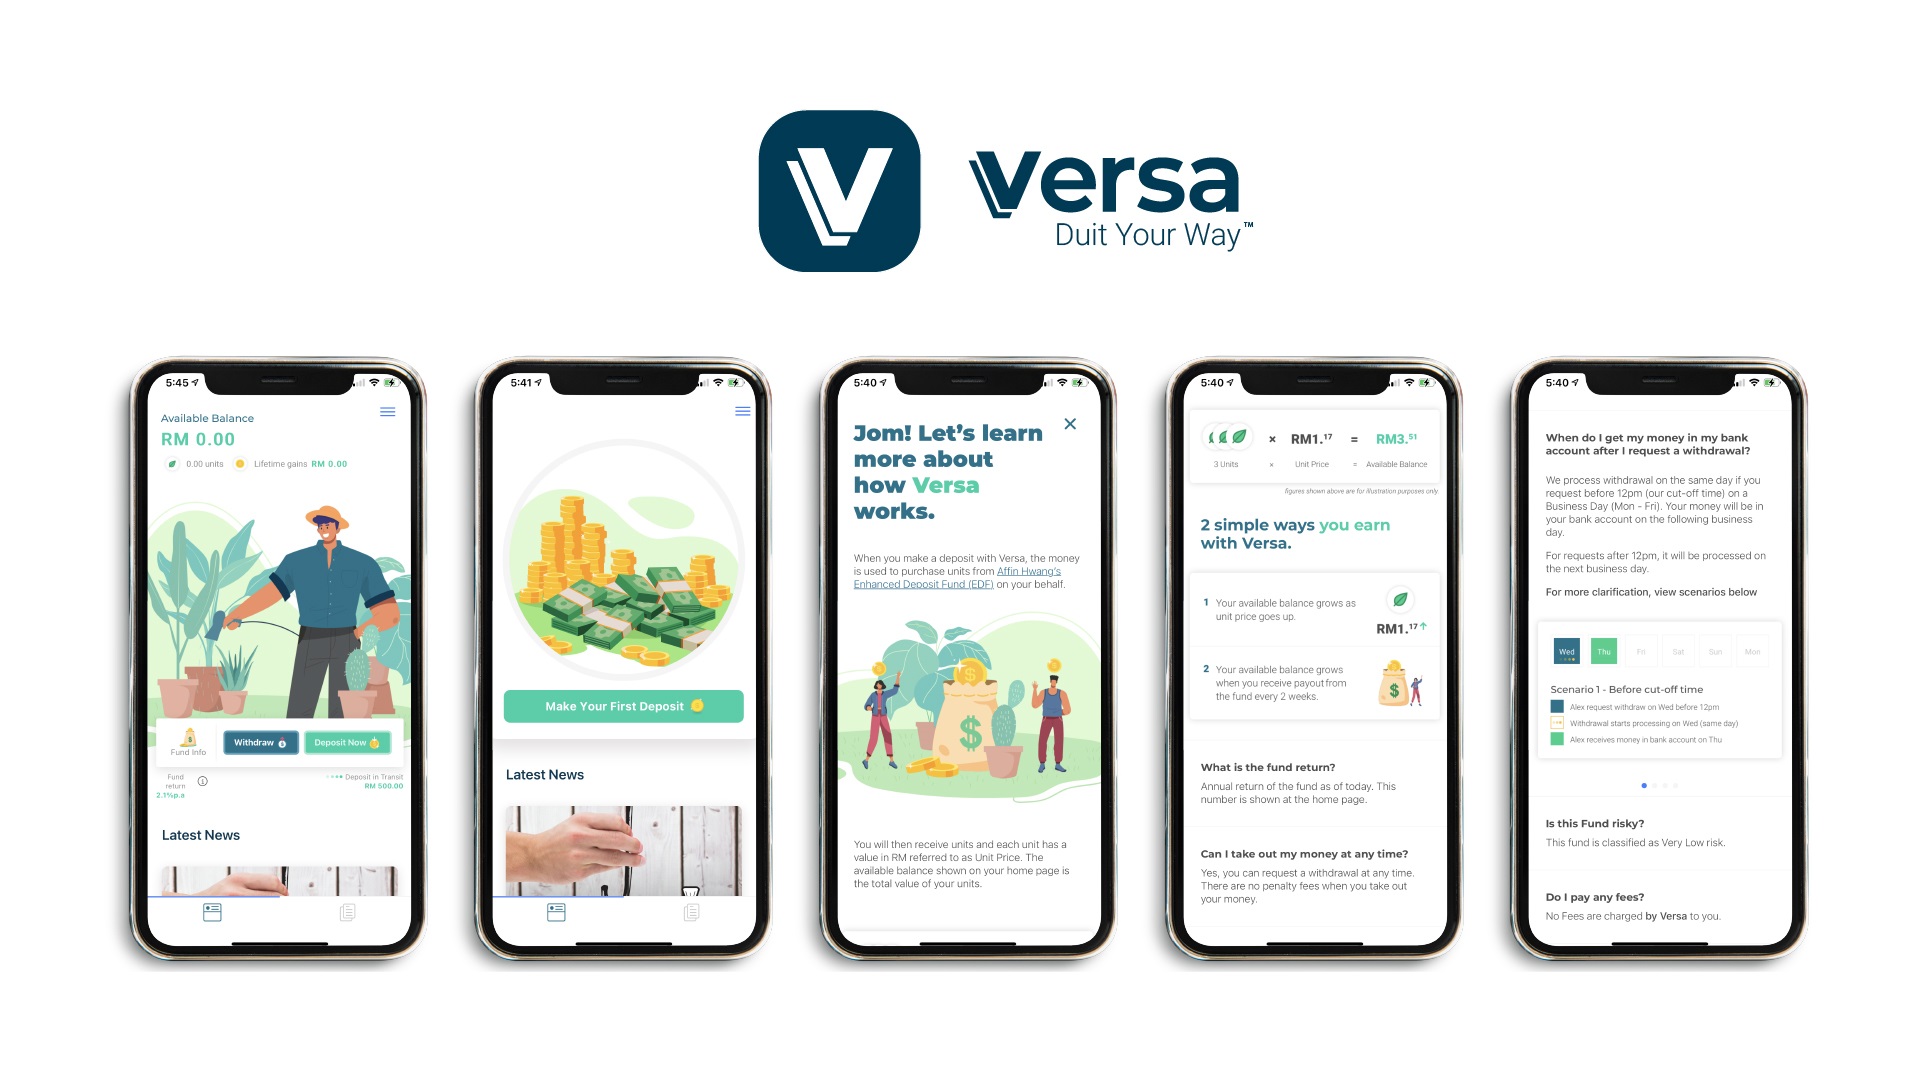 Versa raises US$2.42mil in deposits in three months 